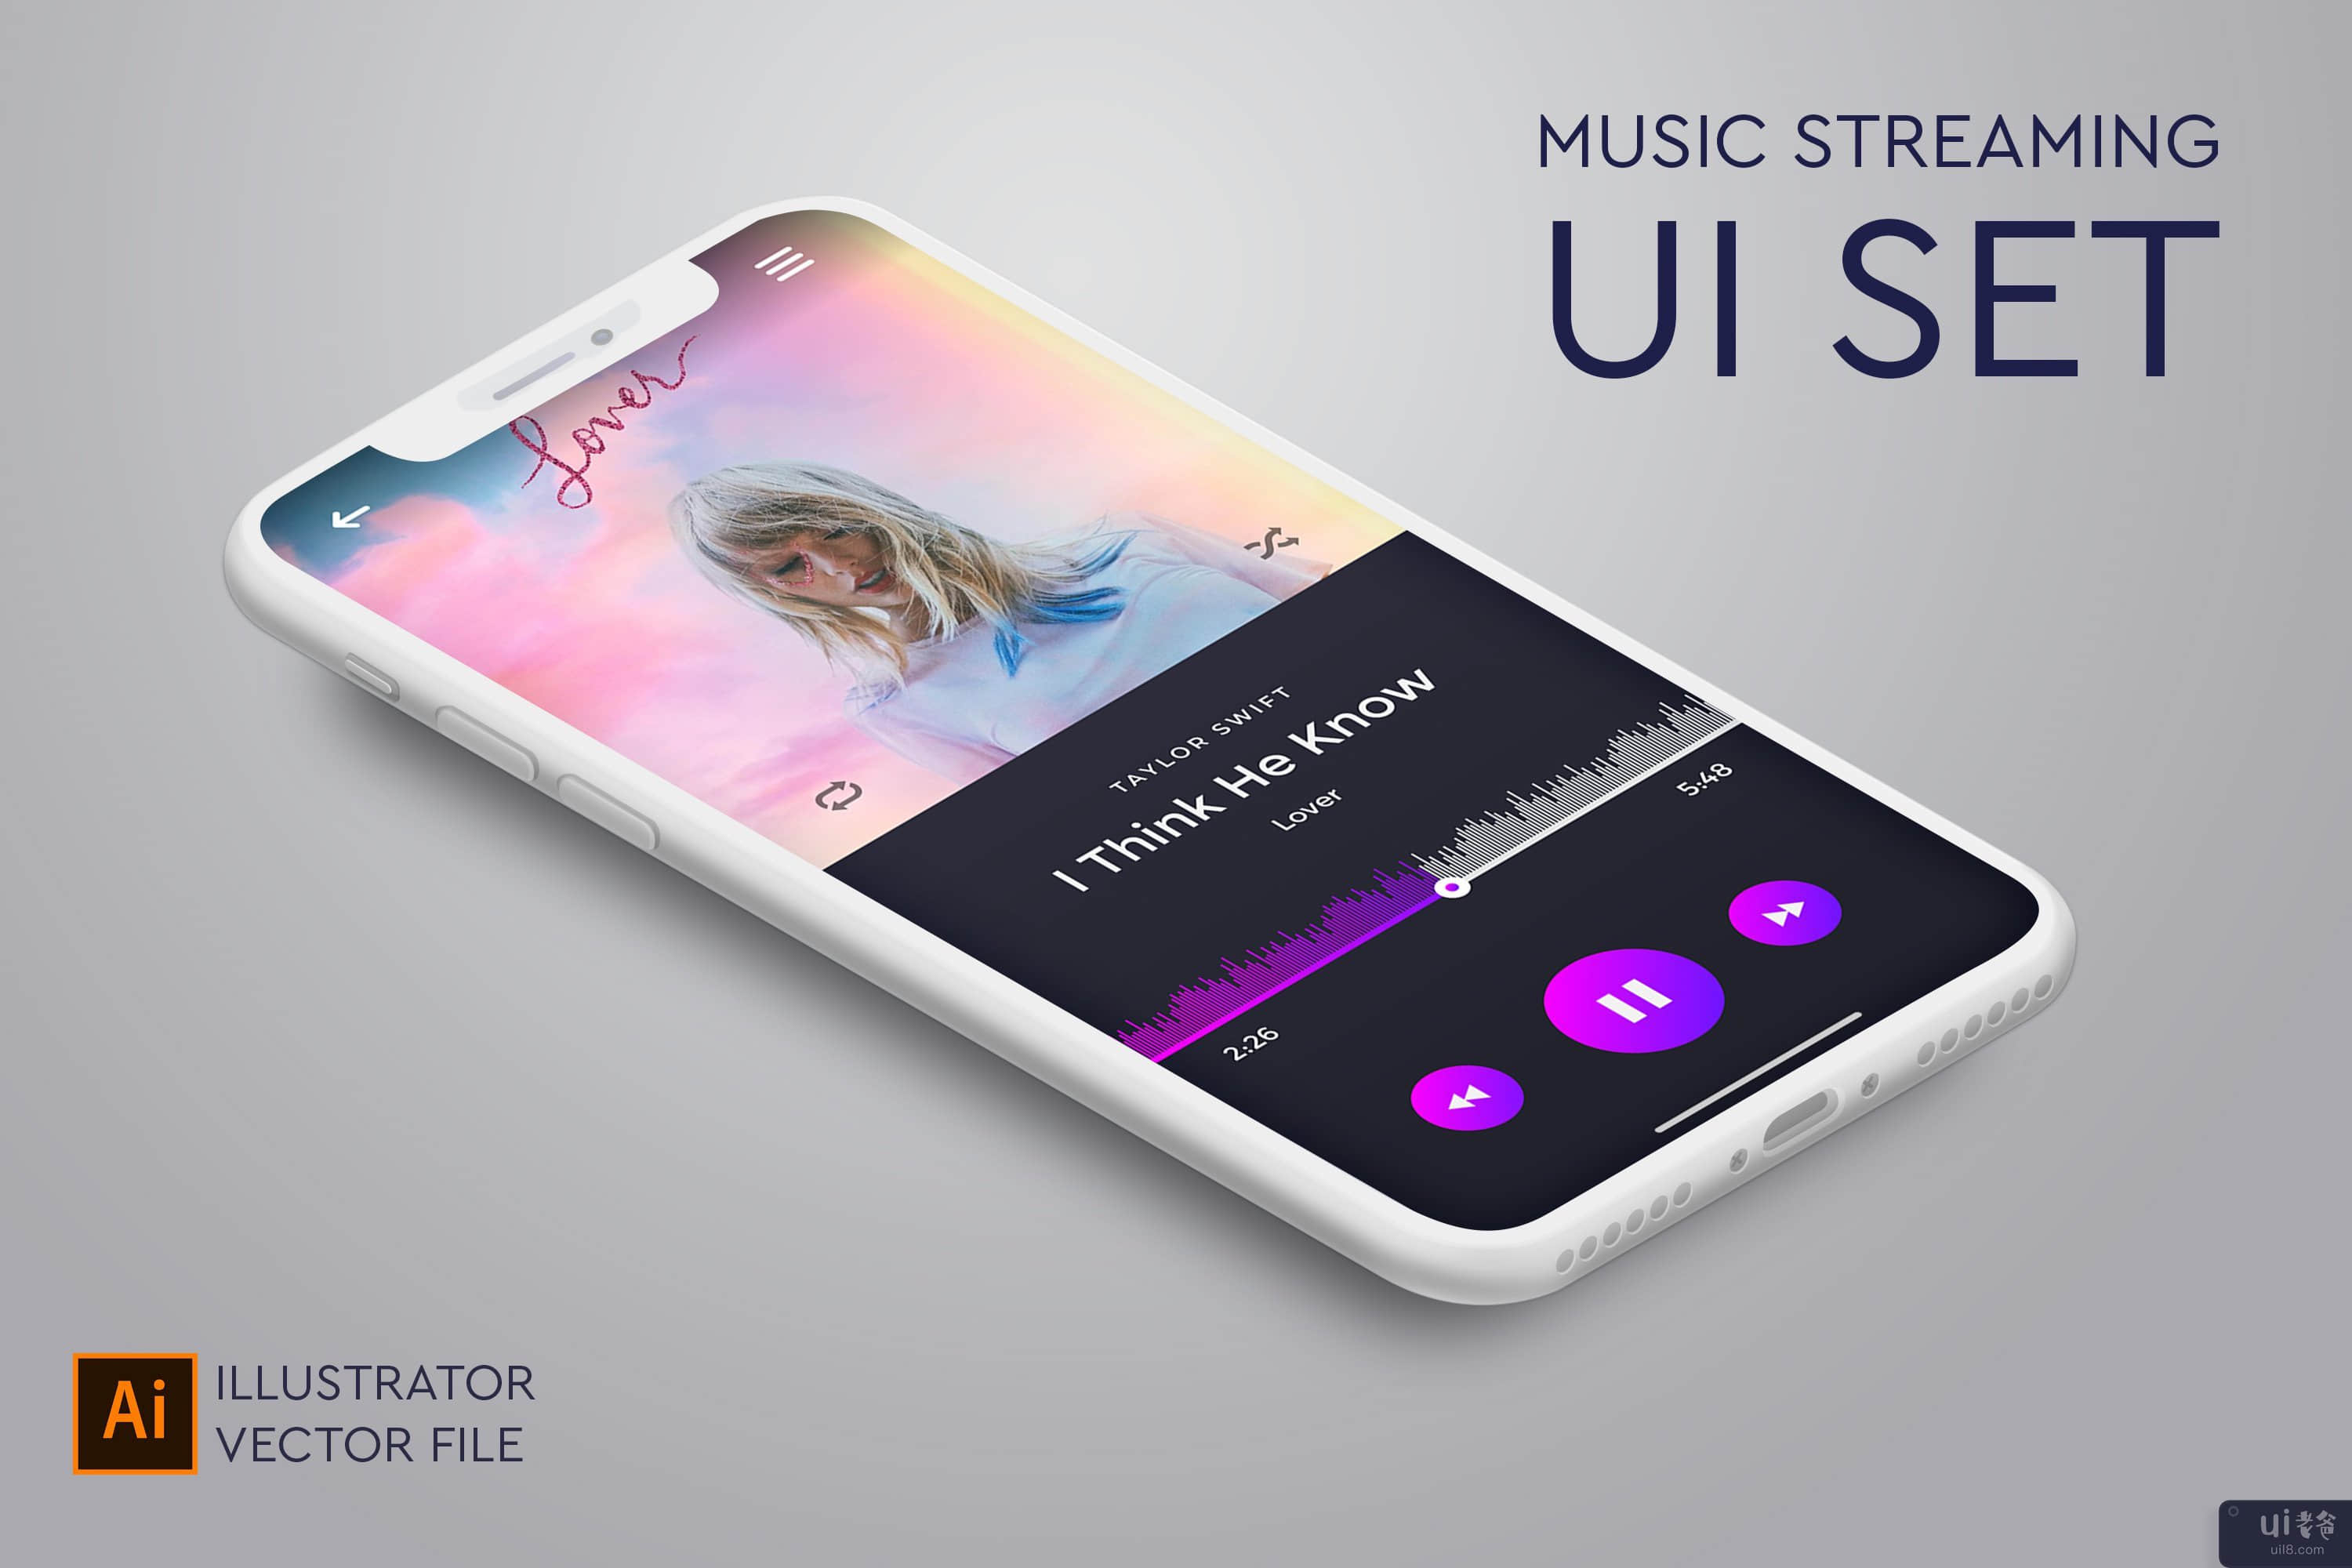 用于在线音乐流媒体的音乐应用 UI 设置(Music app UI set for online music streaming)插图